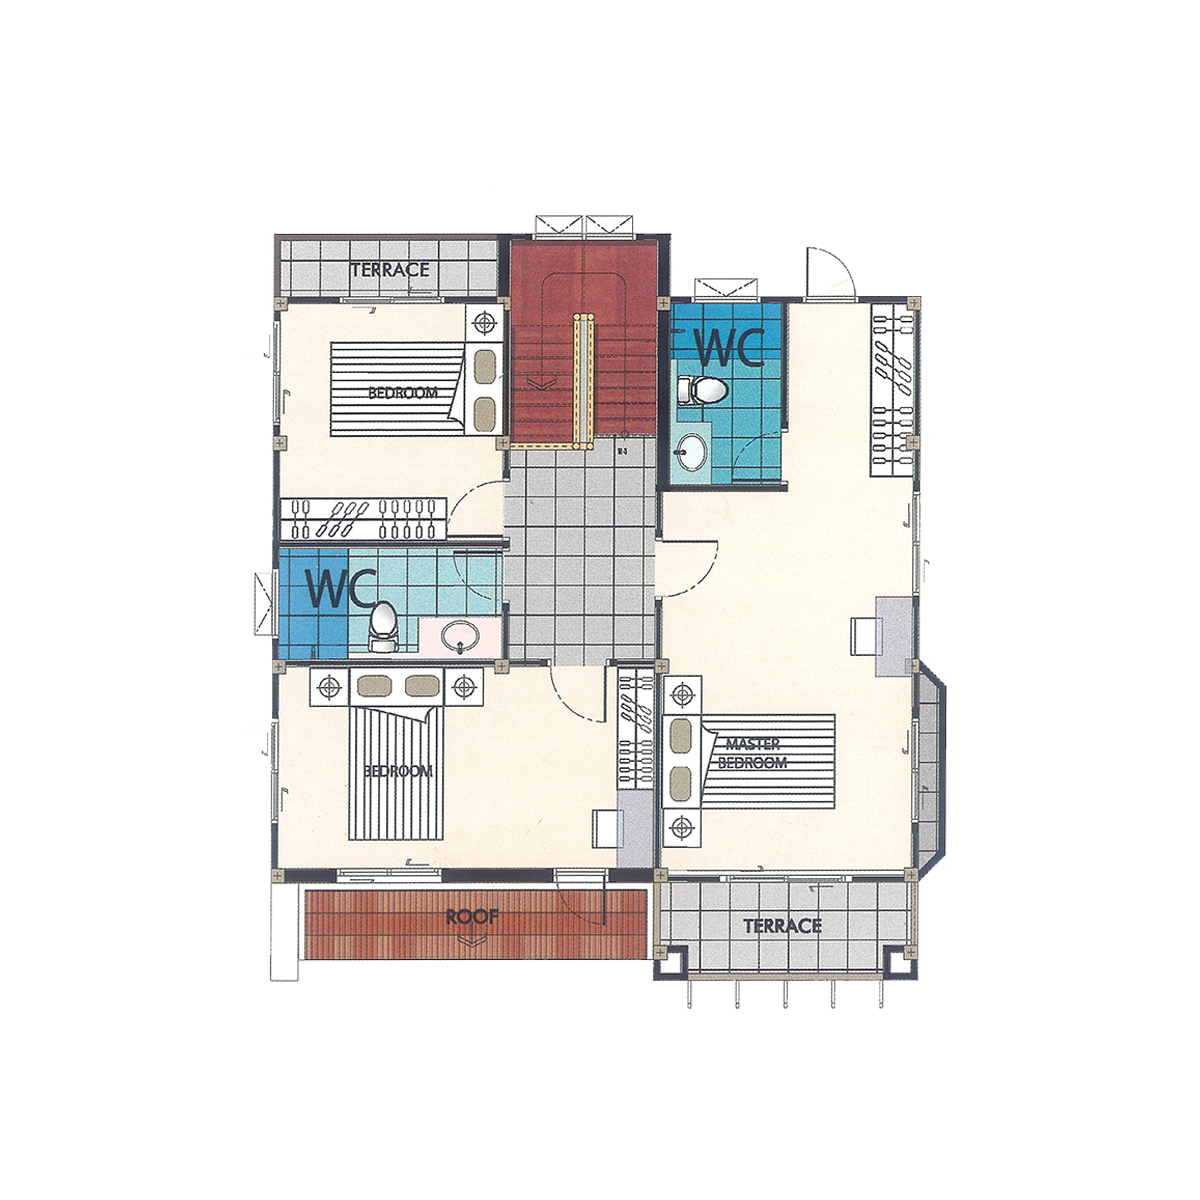 2nd Floor Plan ( Type M2 )